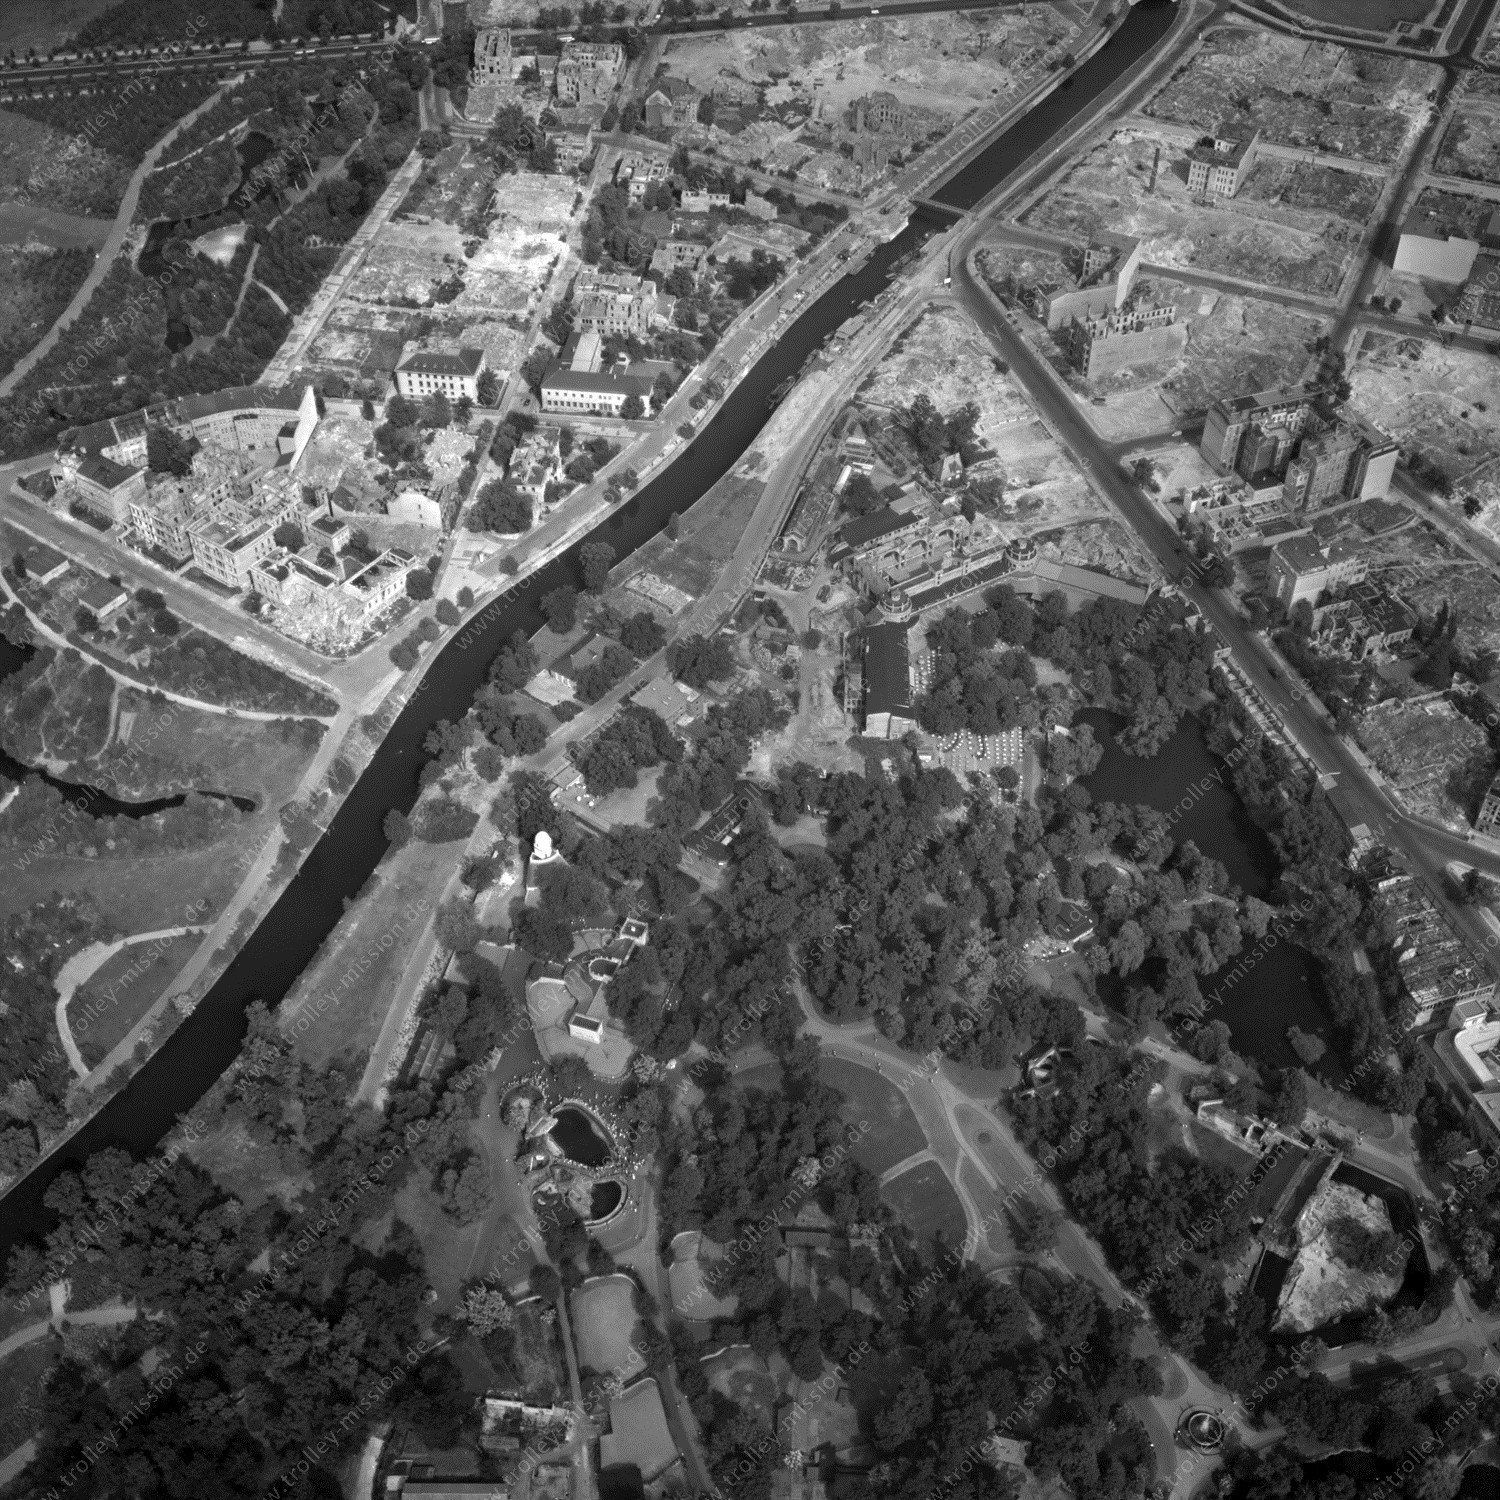 Alte Fotos und Luftbilder von Berlin - Luftbildaufnahme Nr. 02 - Historische Luftaufnahmen von West-Berlin aus dem Jahr 1954 - Flugstrecke Victor